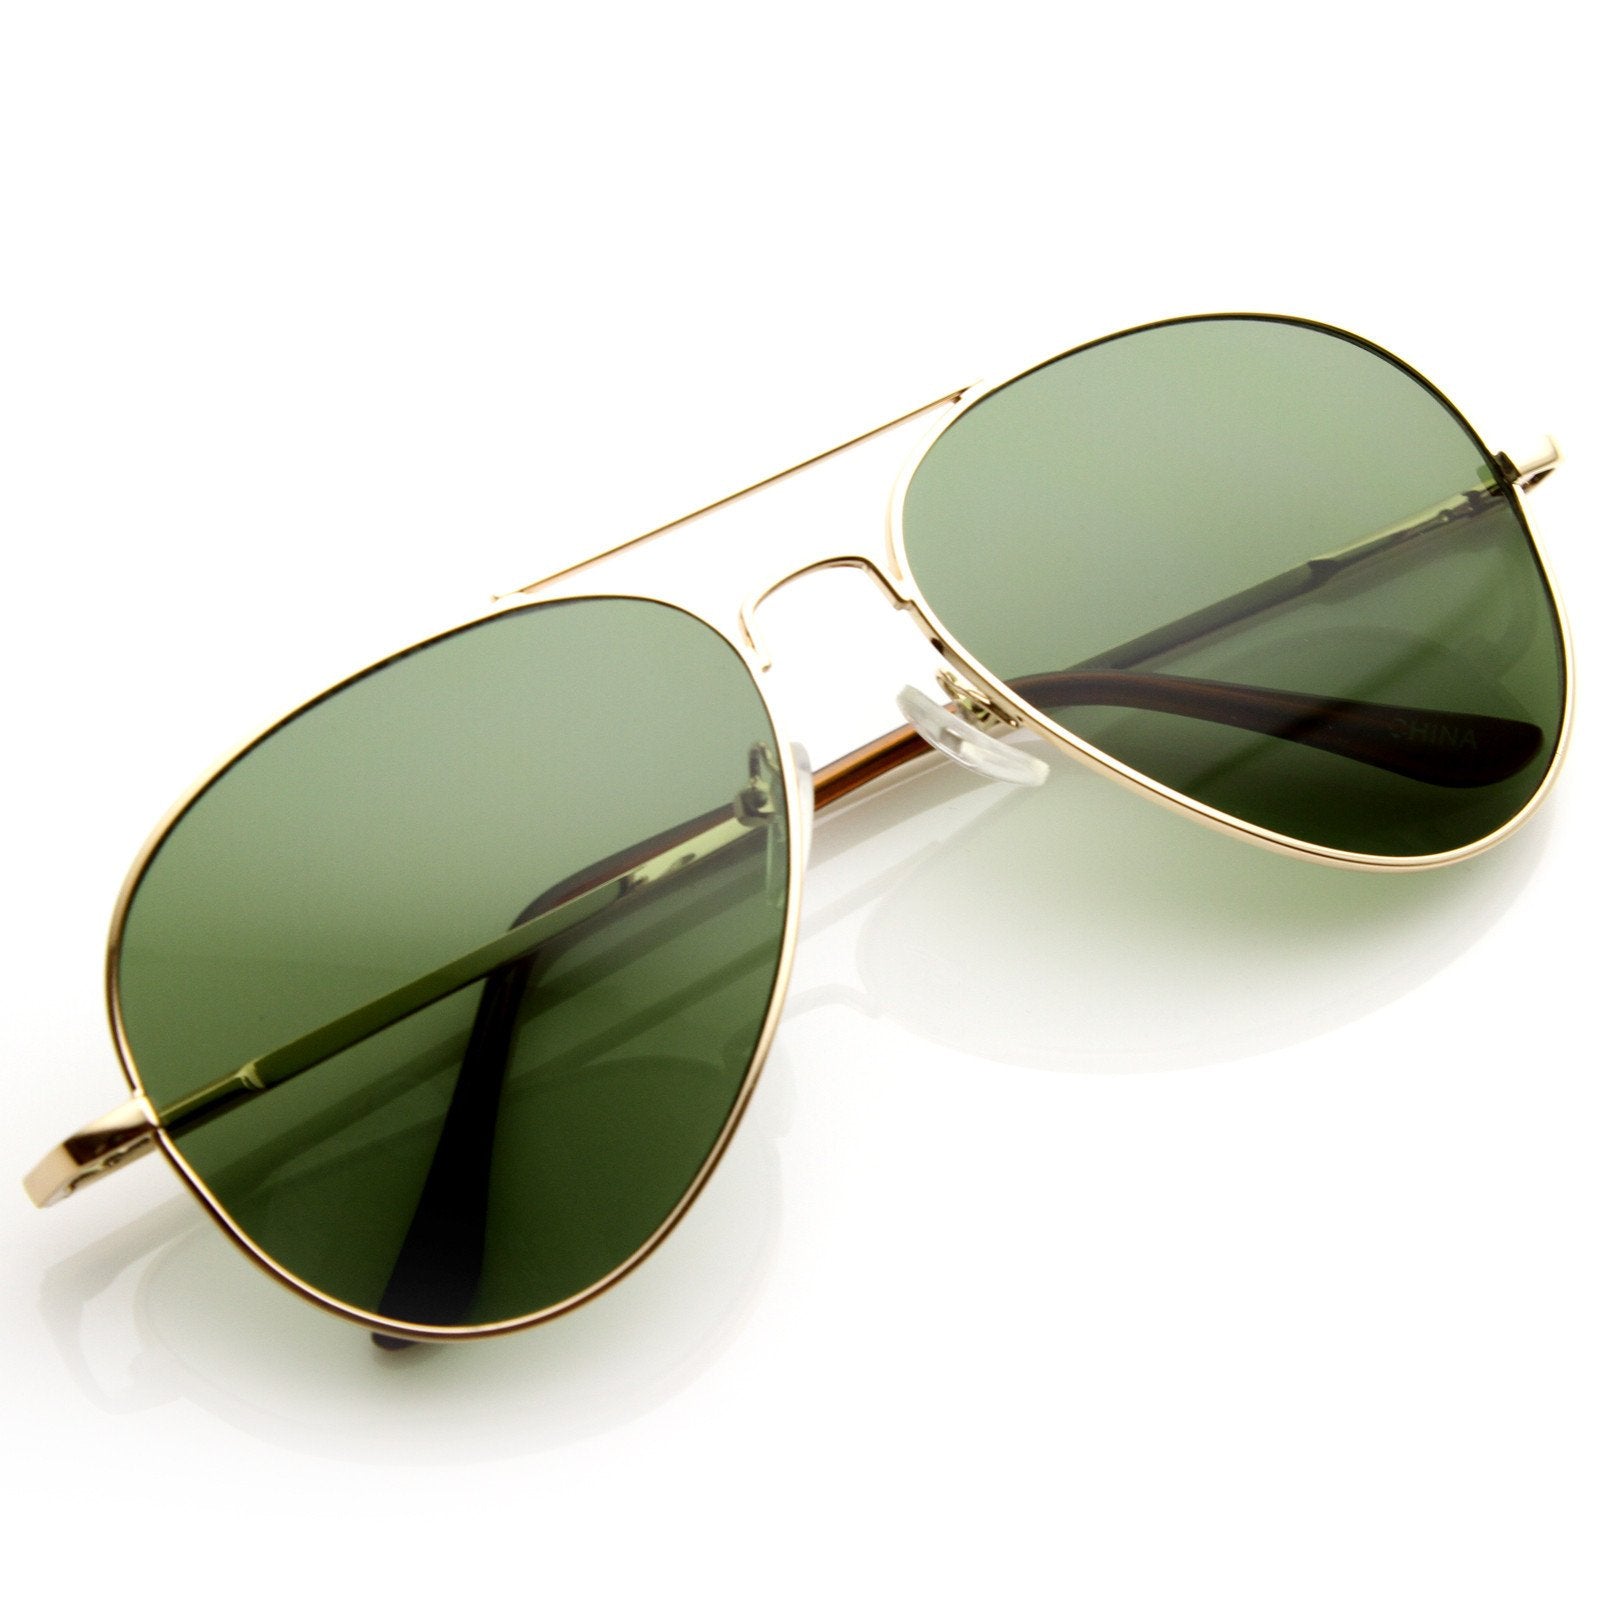 Classic Aviator Sunglasses Retro Metal Frame Zerouv 